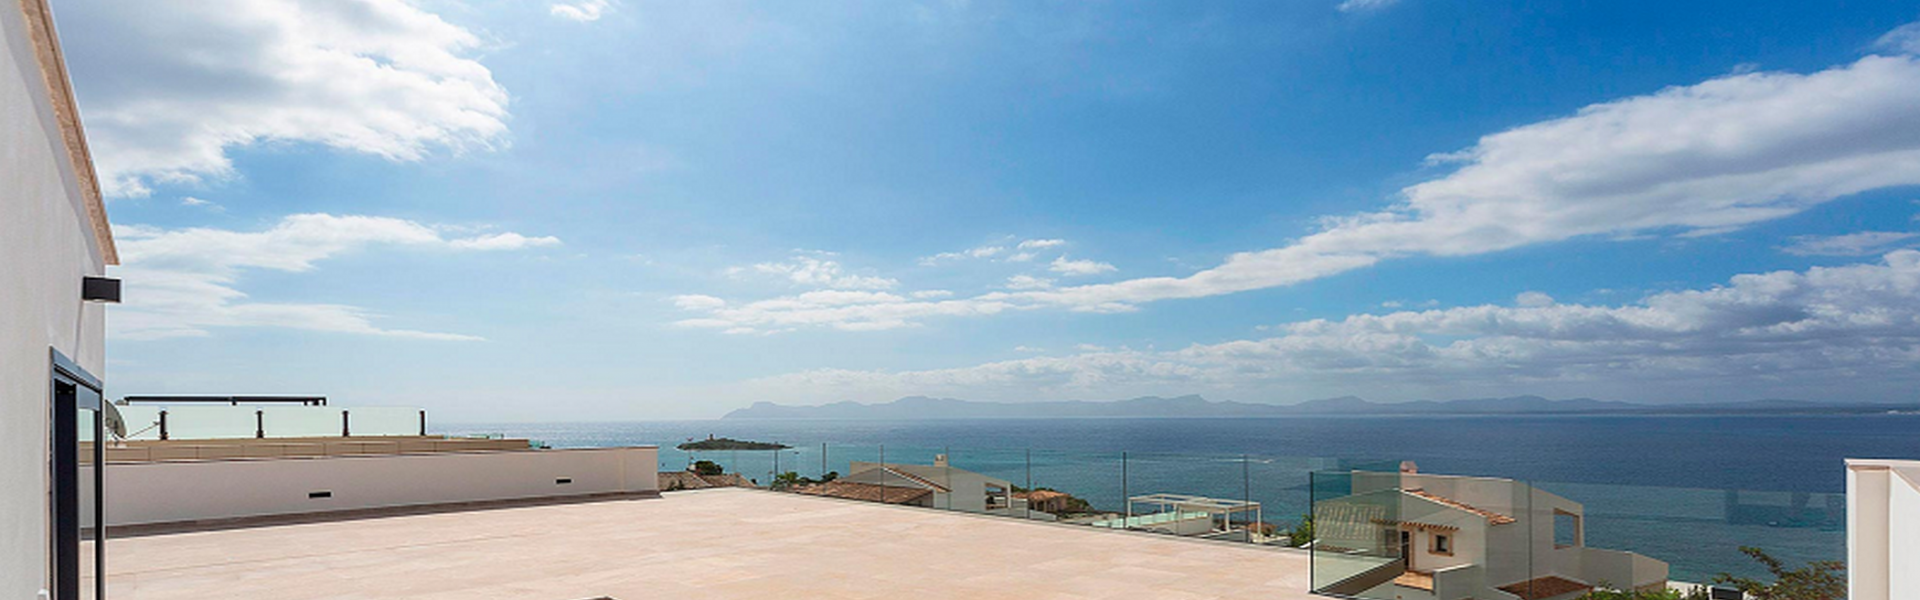 Luxury villa with sea view in Puerto de Alcudia